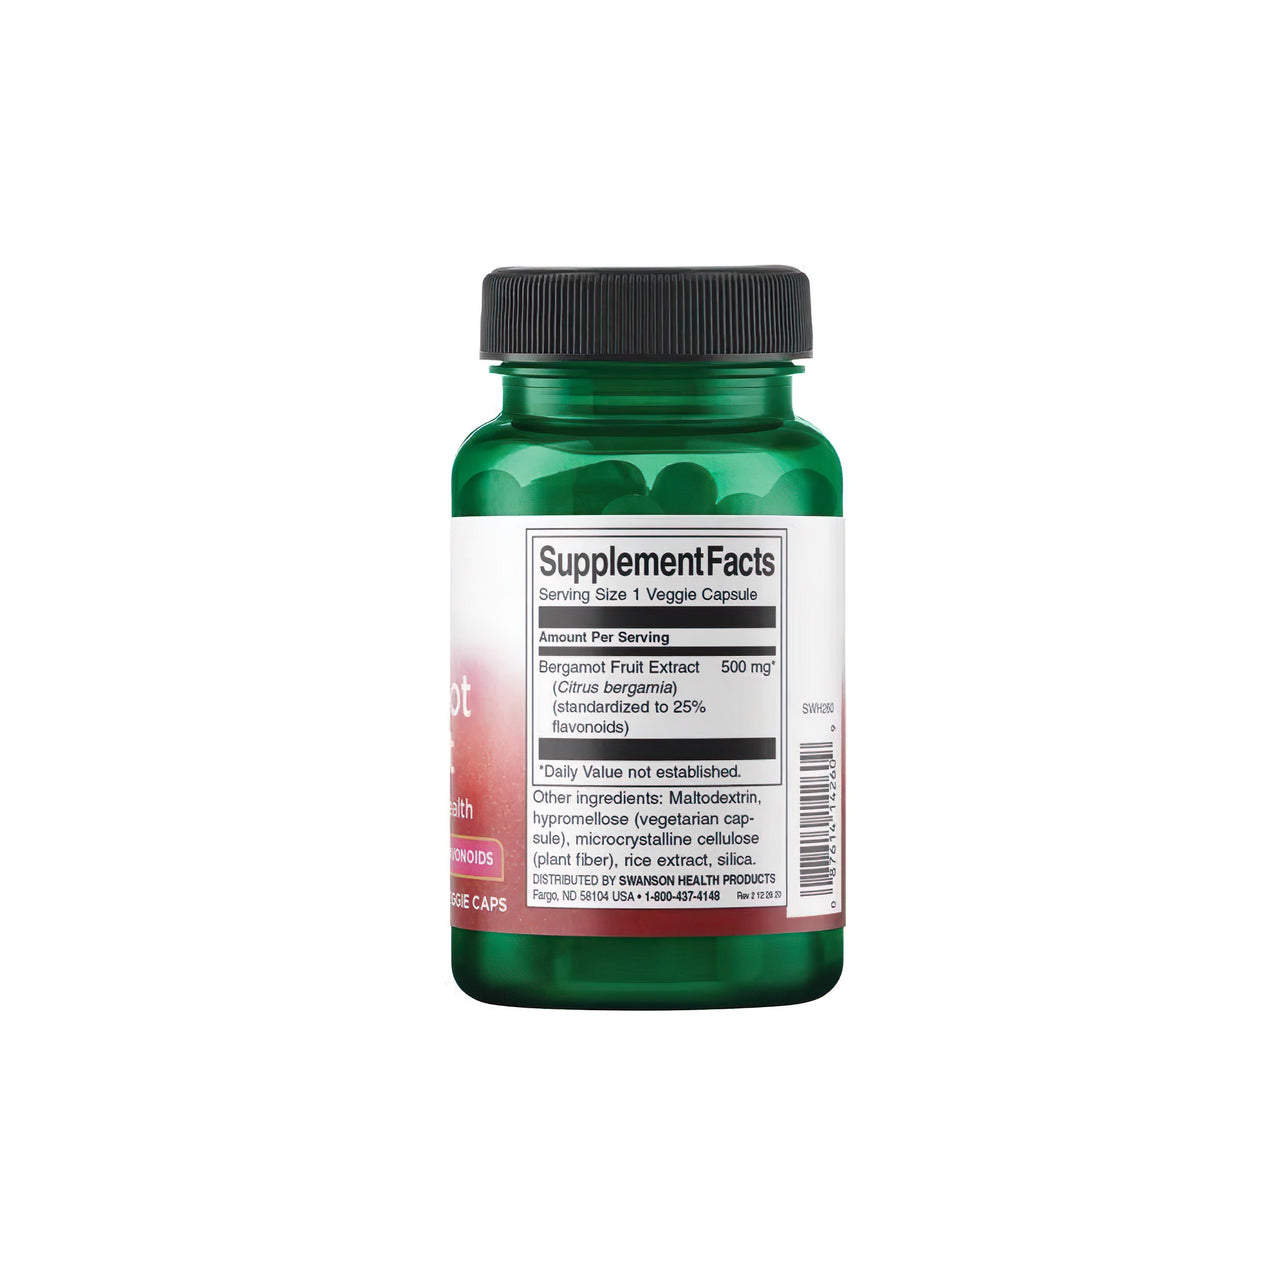 Flacone di integratore alimentare Swanson Bergamot Extract 500 mg 30 vcaps su sfondo bianco.